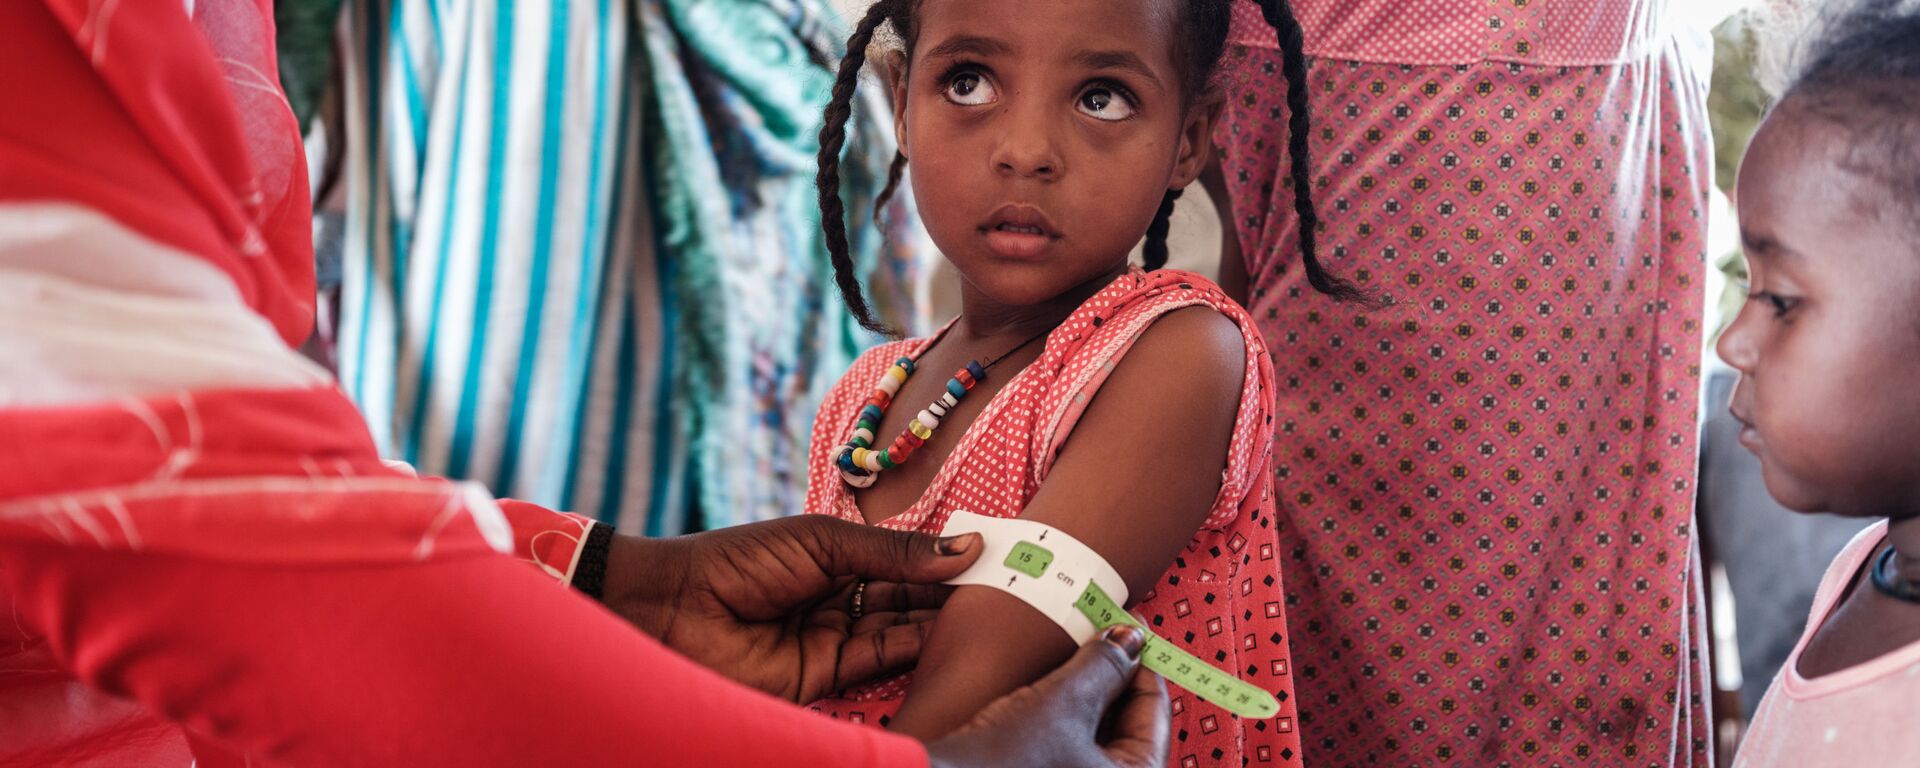 طفلة إثيوبية، تبلغ من العمر 4 سنوات، لاجئة من تيغراي، يتم فحصها في في مركز عبور فيليج إيت لسوء التغذية  بالقرب من الحدود الإثيوبية في القضارف شرق السودان، 2 ديسمبر 2020. - سبوتنيك عربي, 1920, 28.04.2021